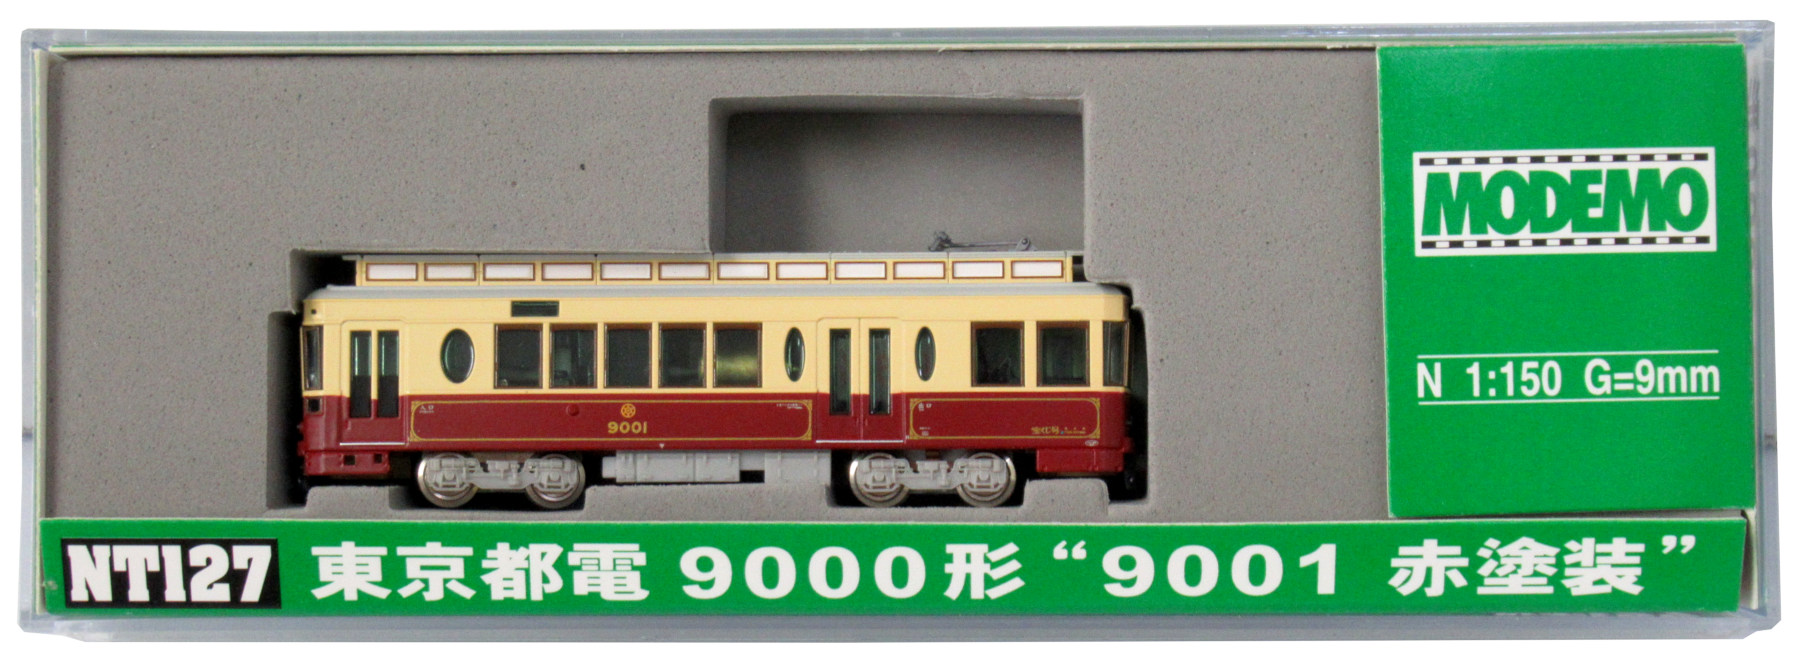 高額売筋】 Nゲージ 東京都電9000形 赤塗装”(MODEMO) “9001 鉄道模型 